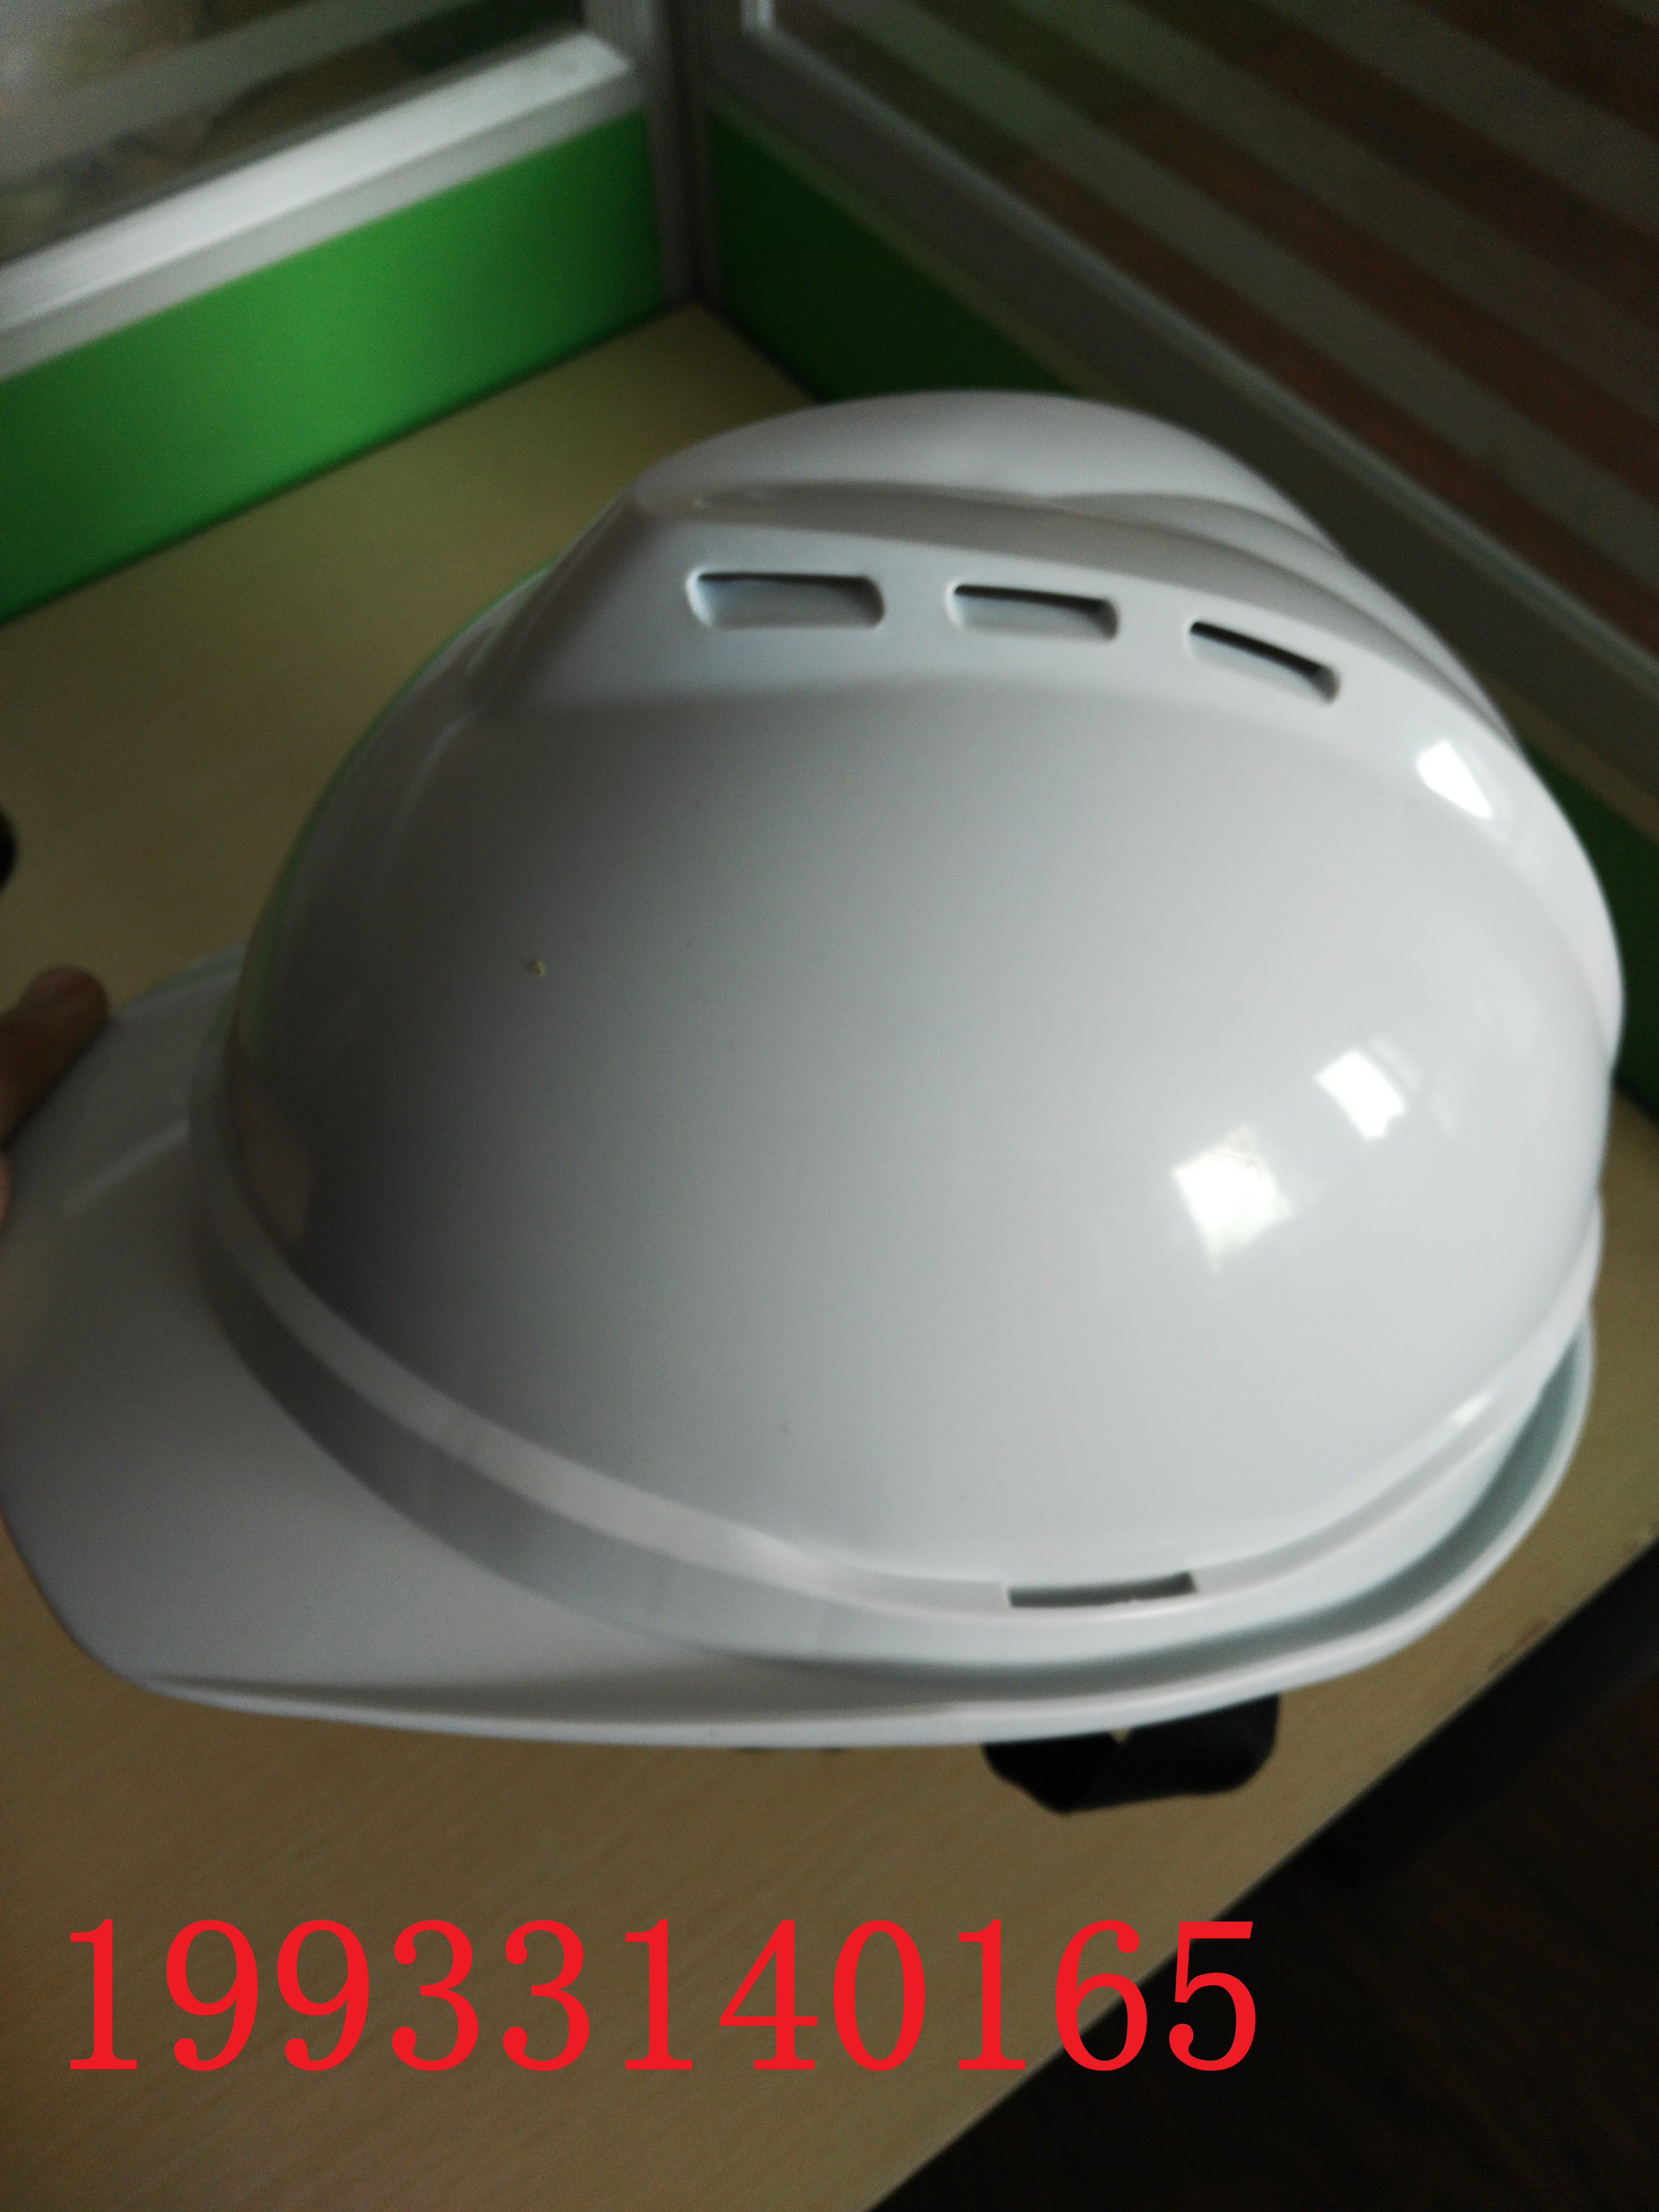 普通安全帽 定位安全帽厂家安全帽gps定位2